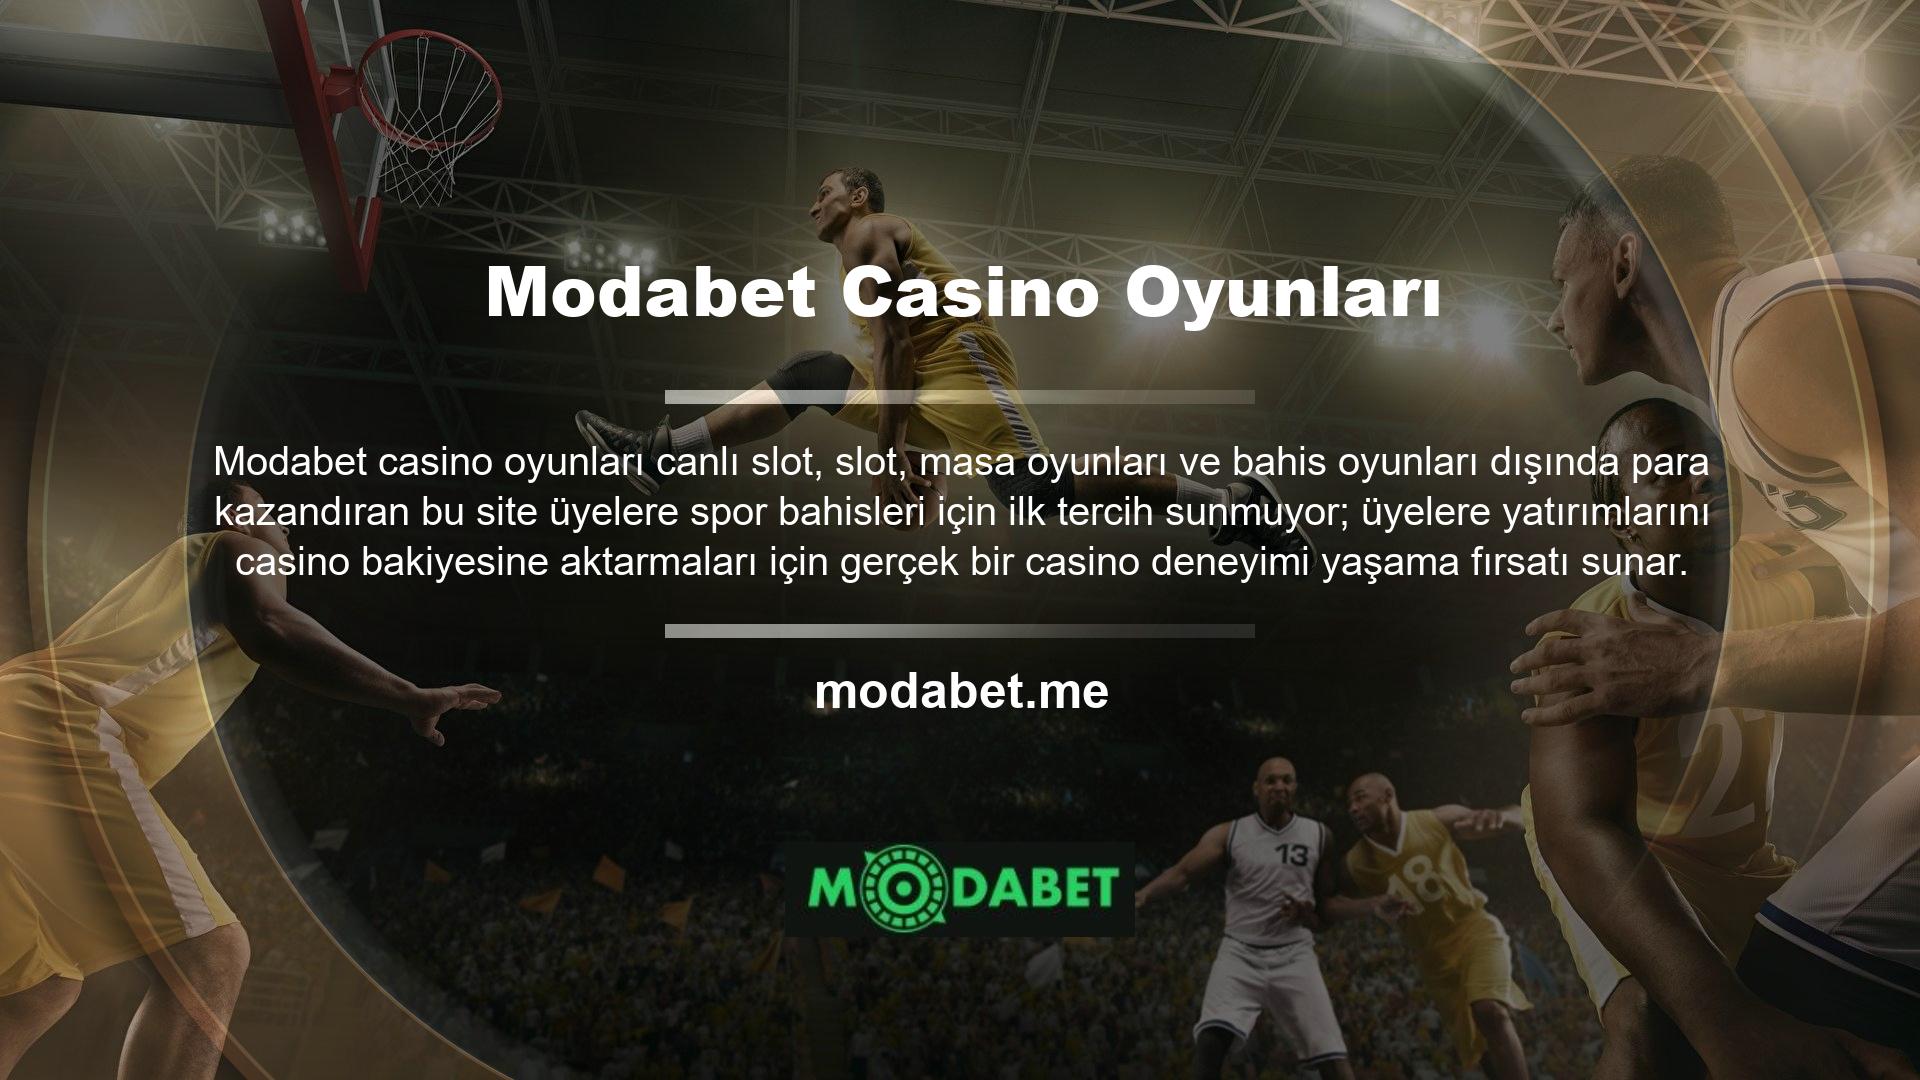  Modabet Oyun Sayfası  Casino OyunlarıModabet oyun dünyasına giriş yaptı